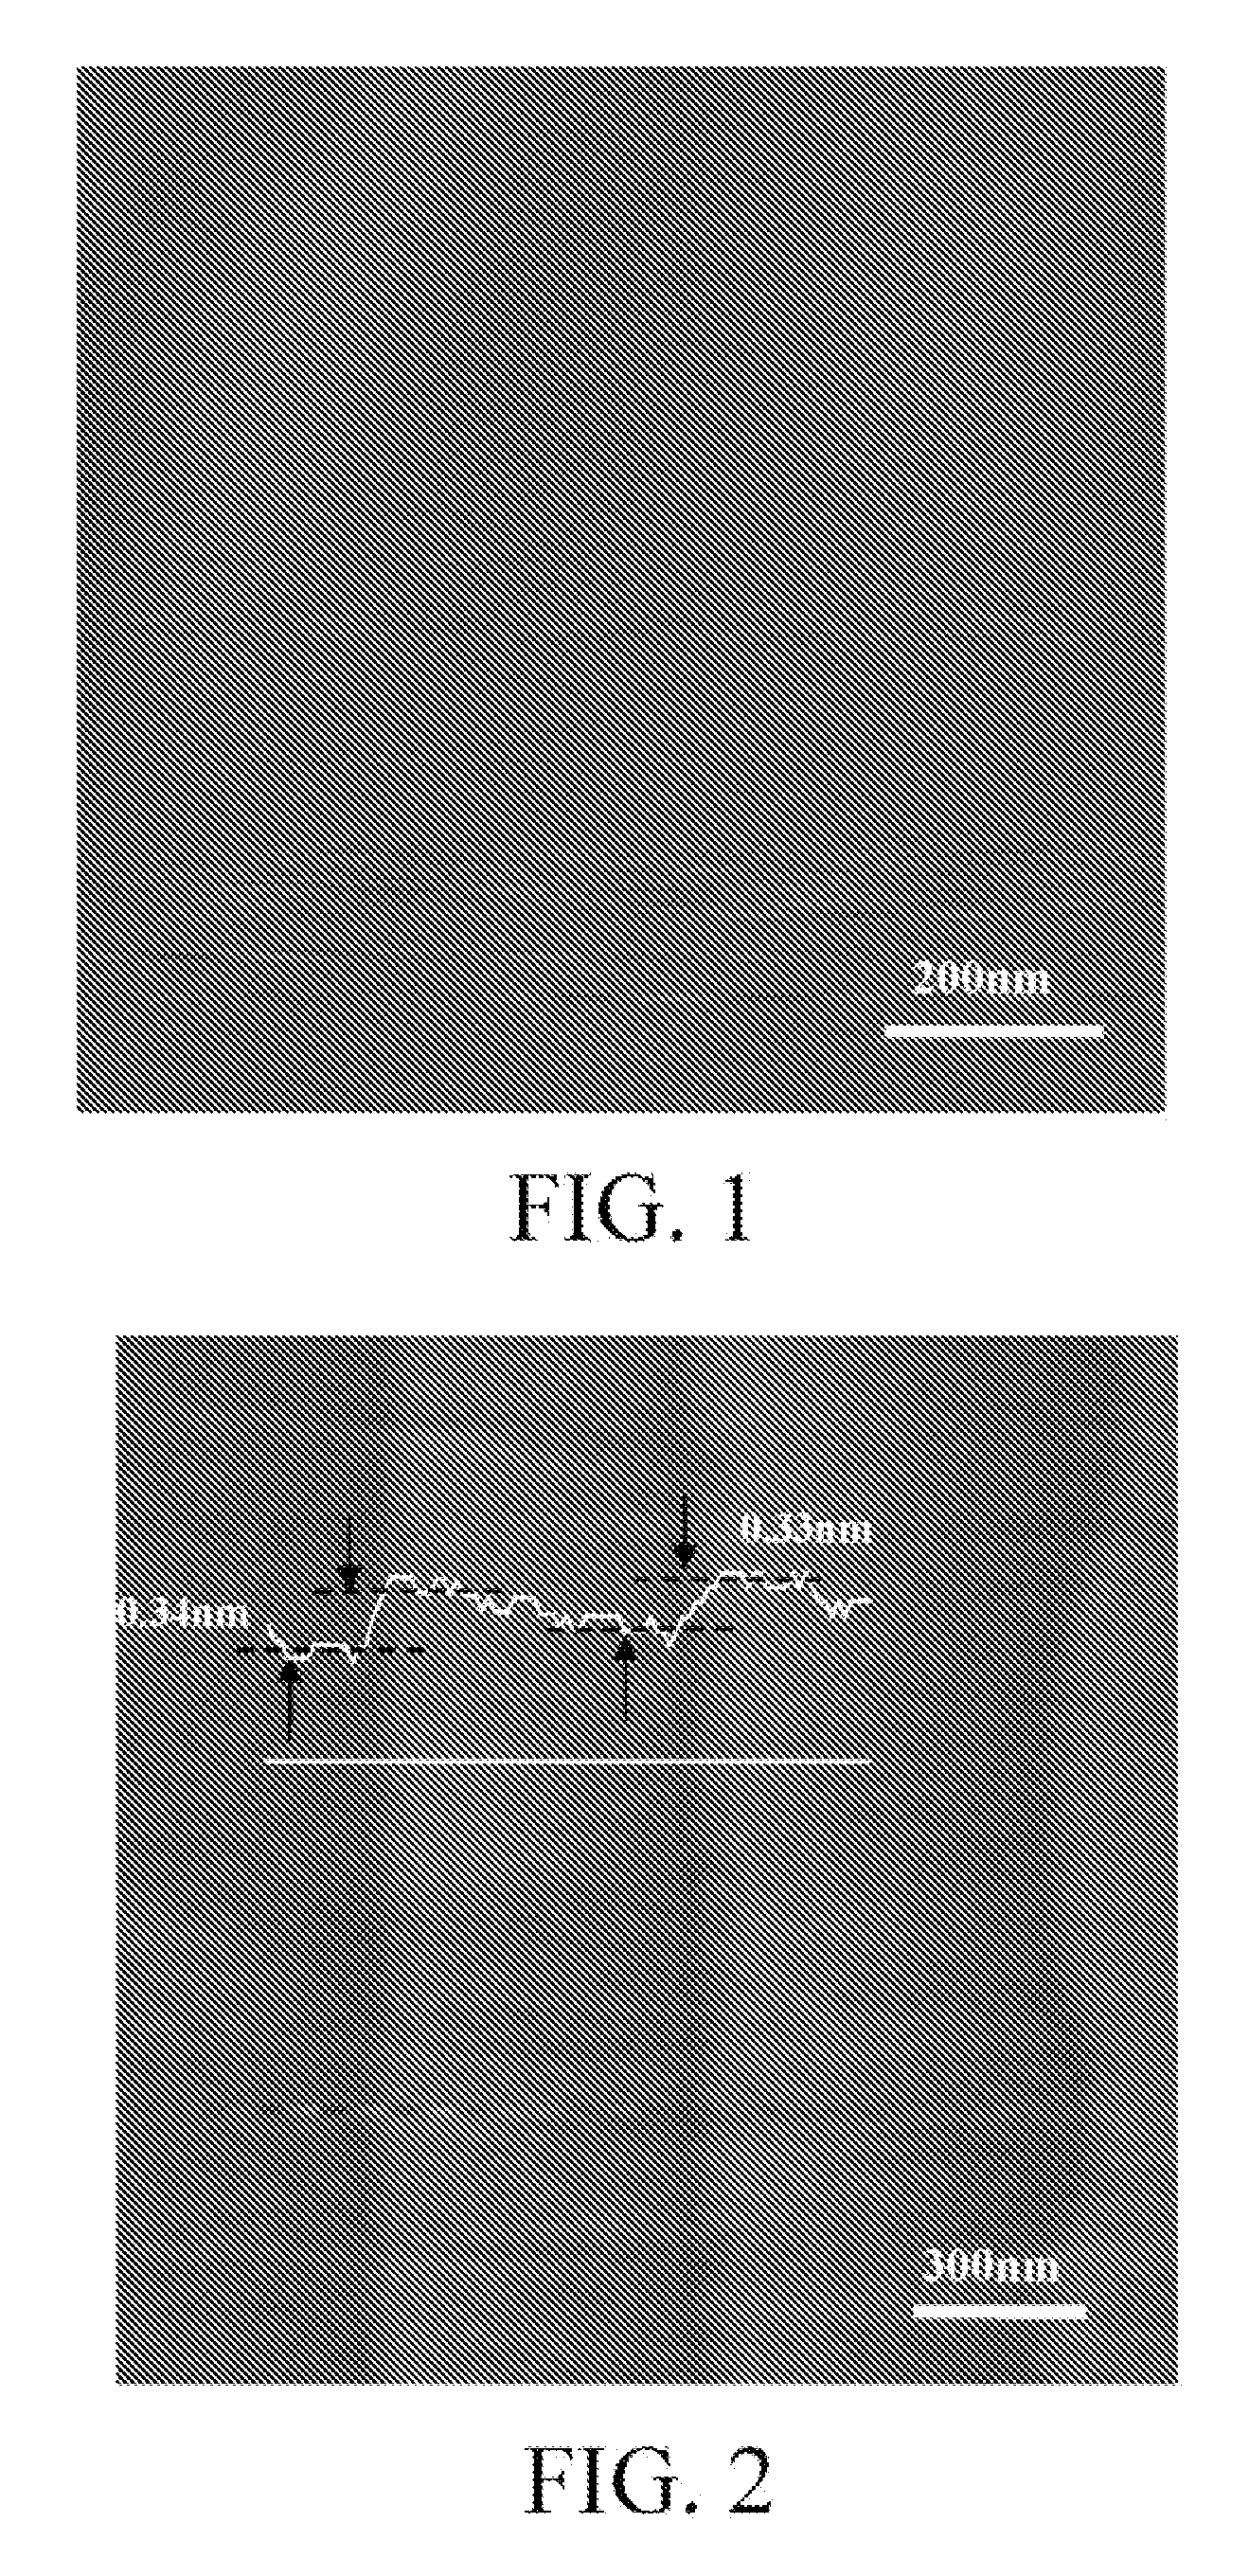 Method for preparing graphene nanoribbon on insulating substrate